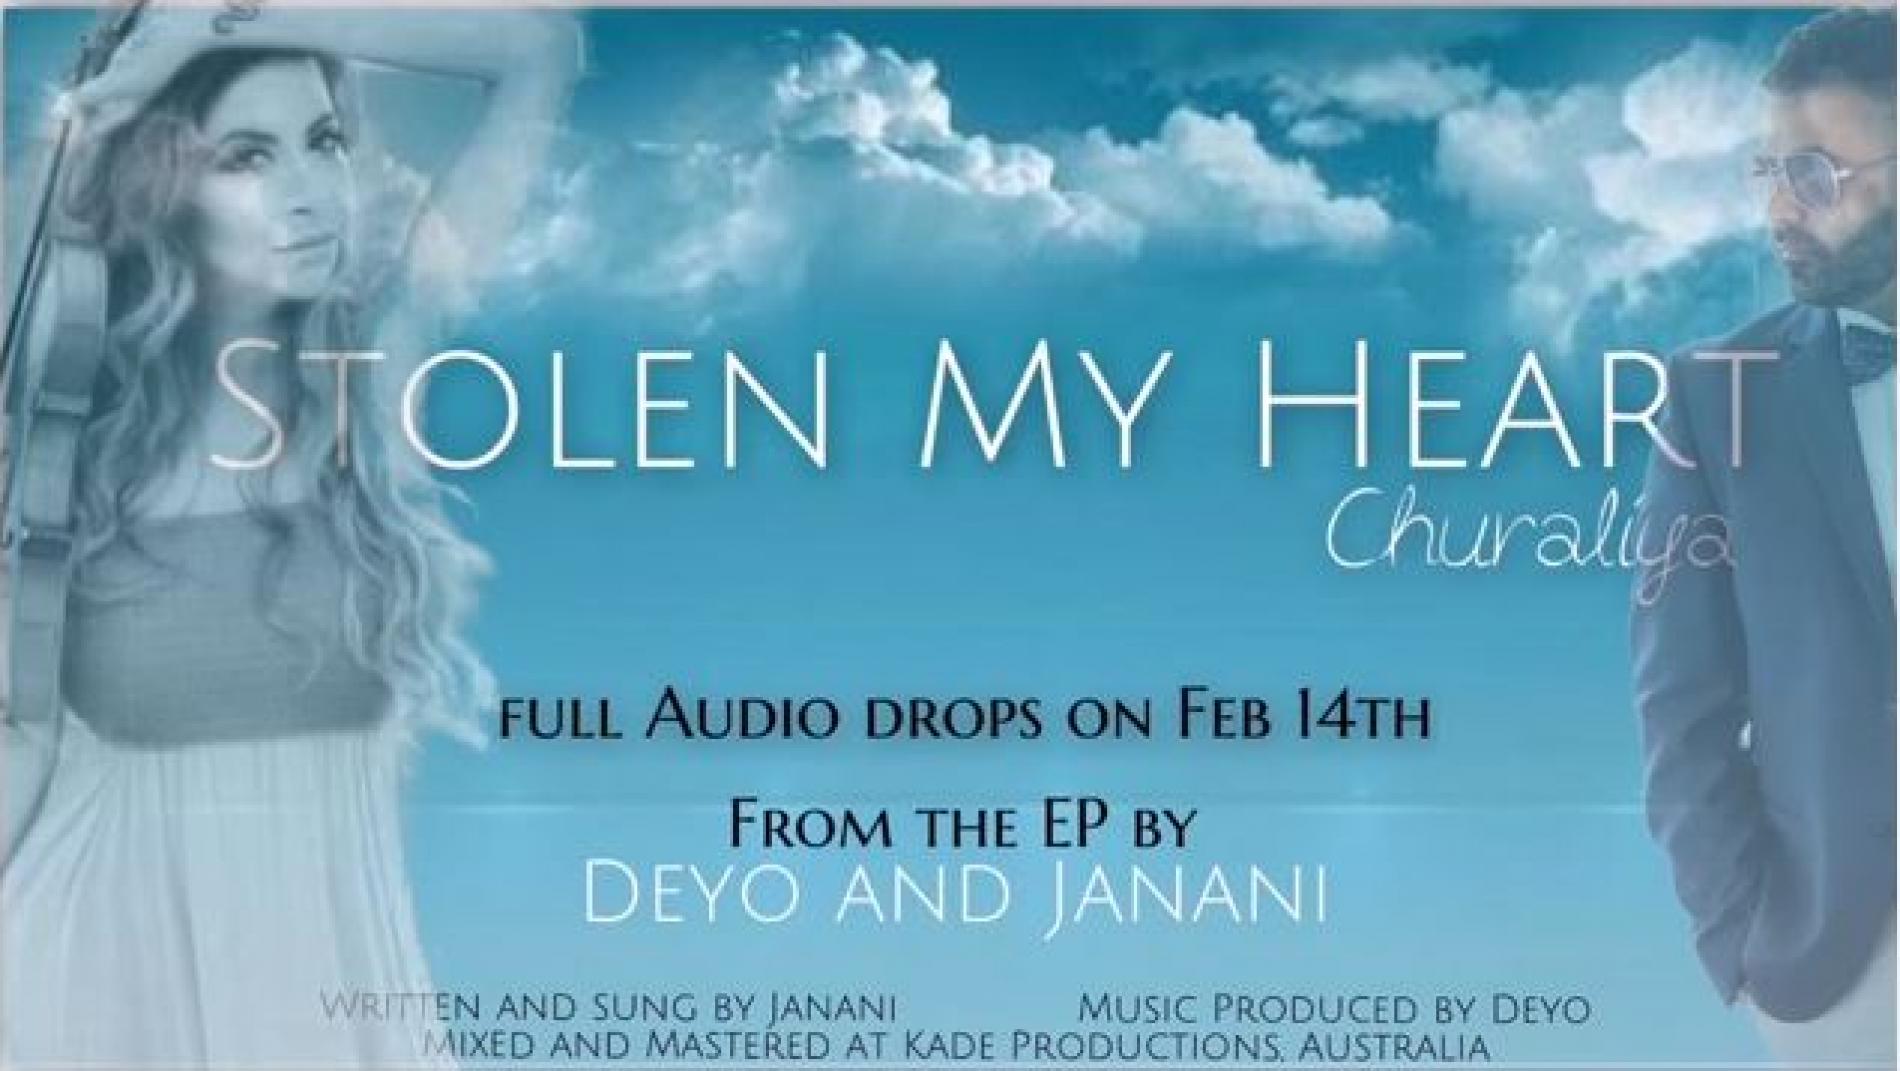 Deyo & Janani – Stolen My Heart (Churaliya ) Snippet